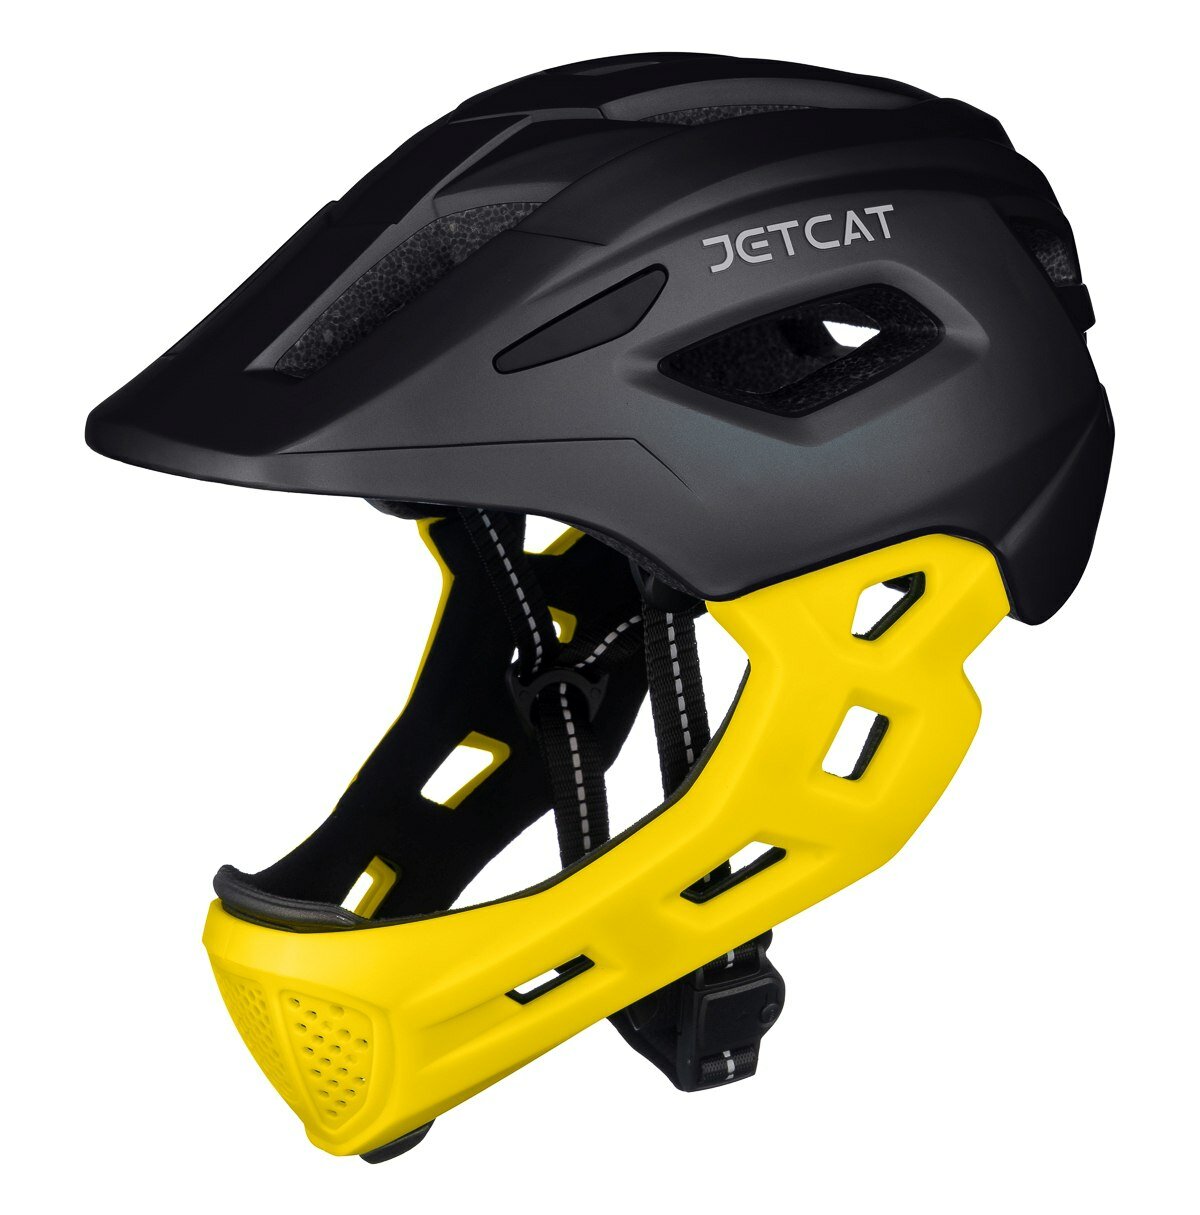 Шлем JETCAT - Start - - размер "S" (52-56см) защитный велосипедный велошлем детский Шлем JETCAT - Start - Black/Yellow - размер "S" (52-56см) защитный велосипедный велошлем детский